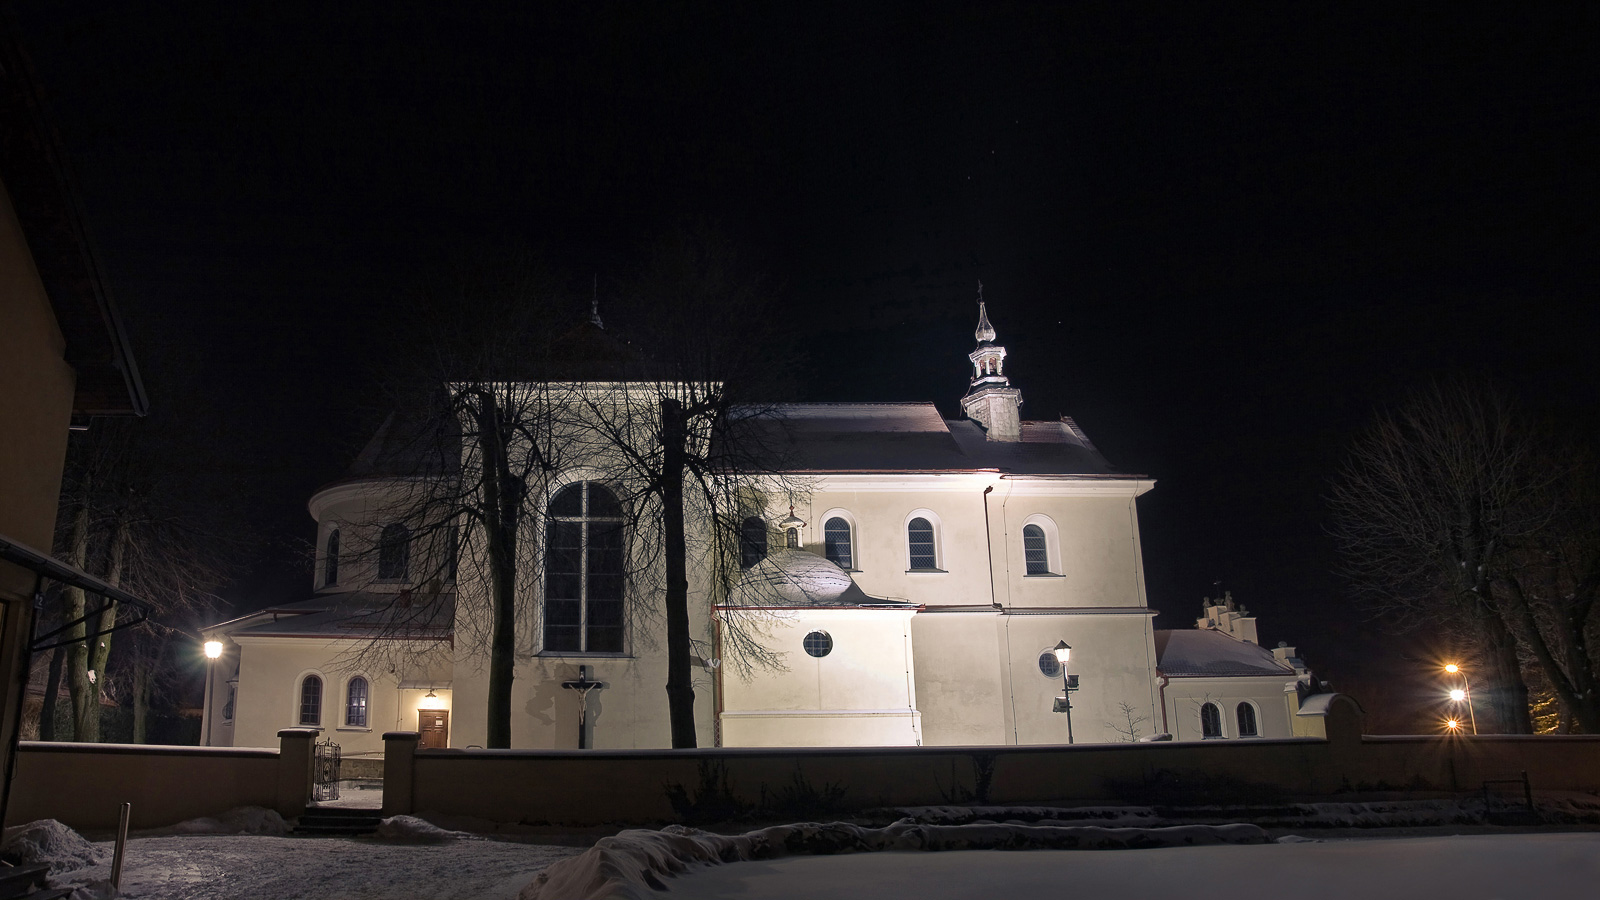 Kościół parafilalny św. Bartłomieja w Mogilanach zimą w nocy